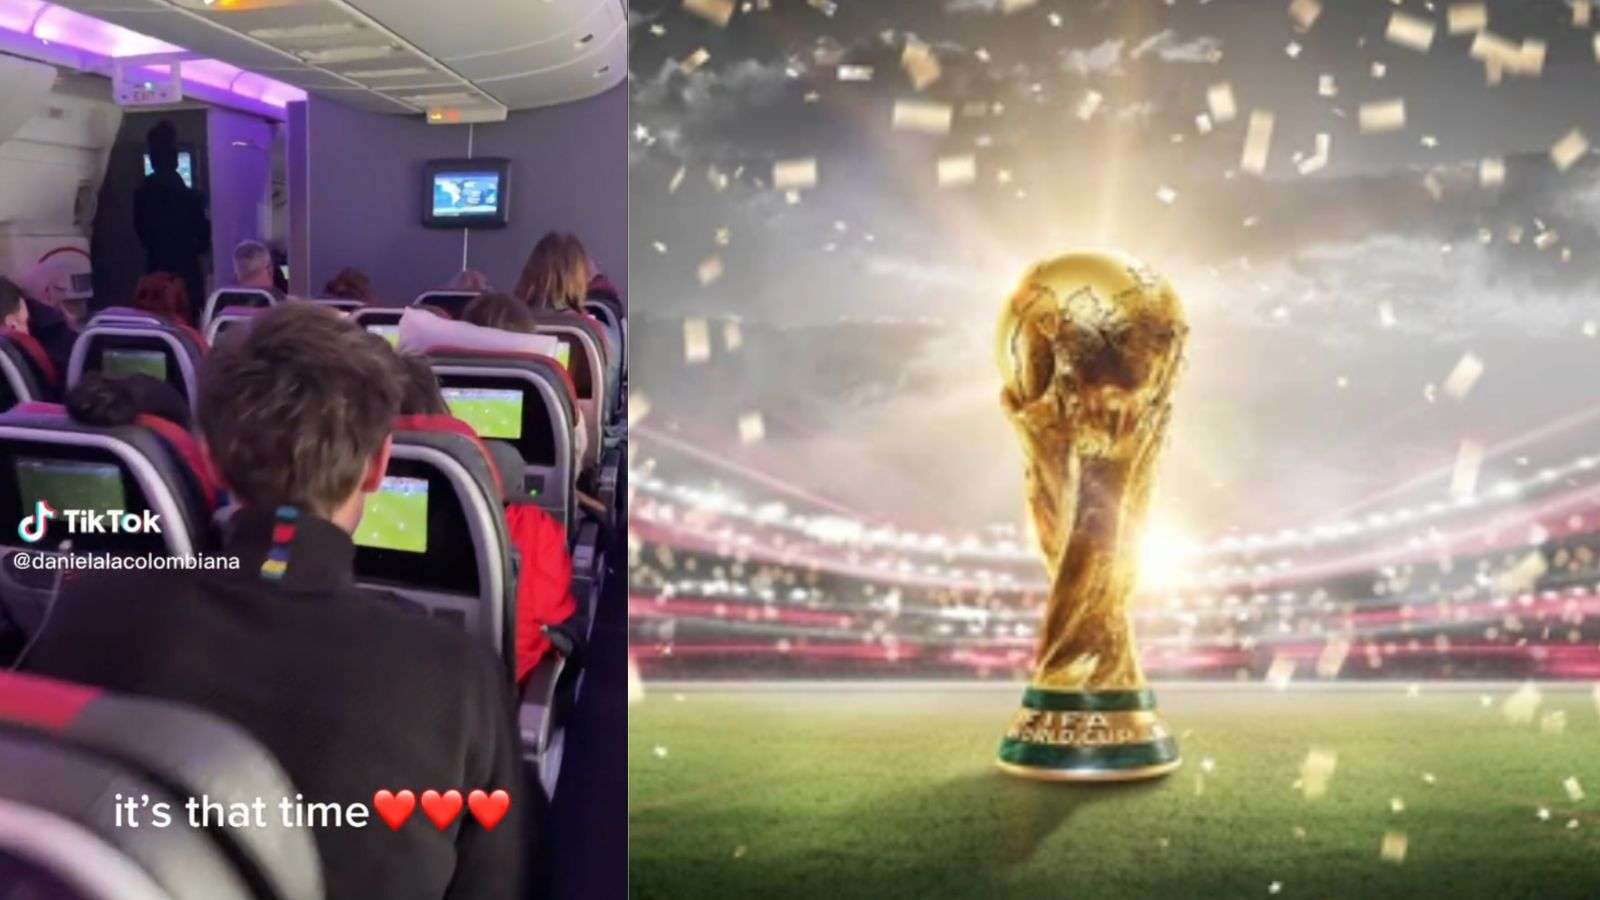 TikTok world cup airplane